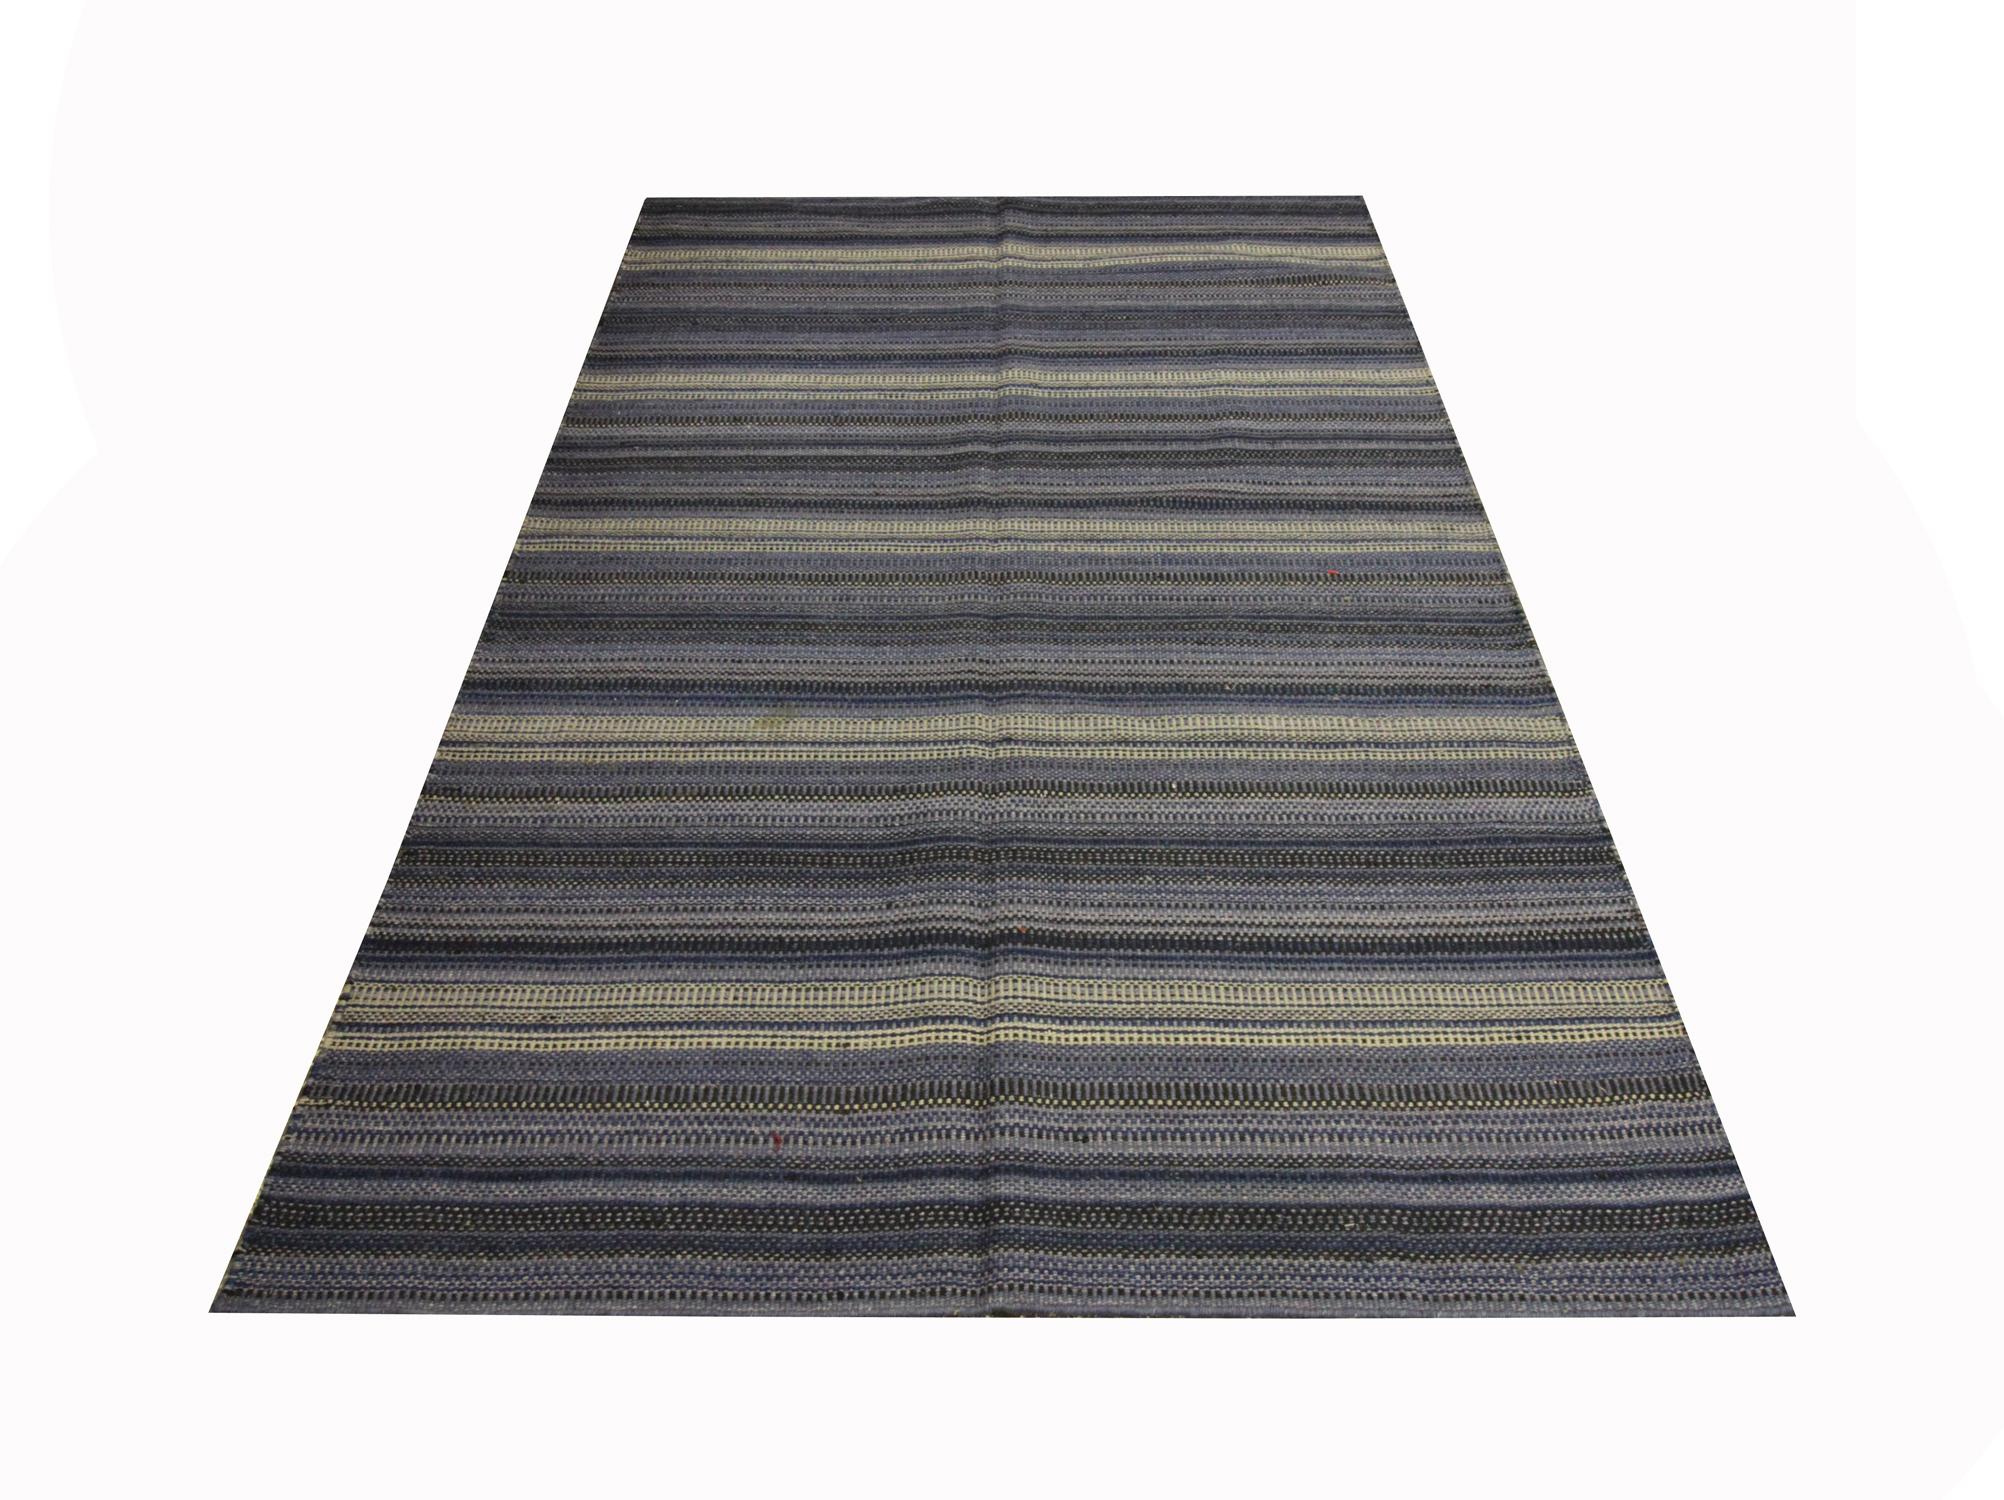 Ce tapis audacieux est un kilim tissé à plat, tissé à la main au début du 21e siècle. Le design présente un simple motif à rayures tissé dans des accents de bleu, de crème et de noir. La couleur et le design font de cette pièce le tapis d'accent